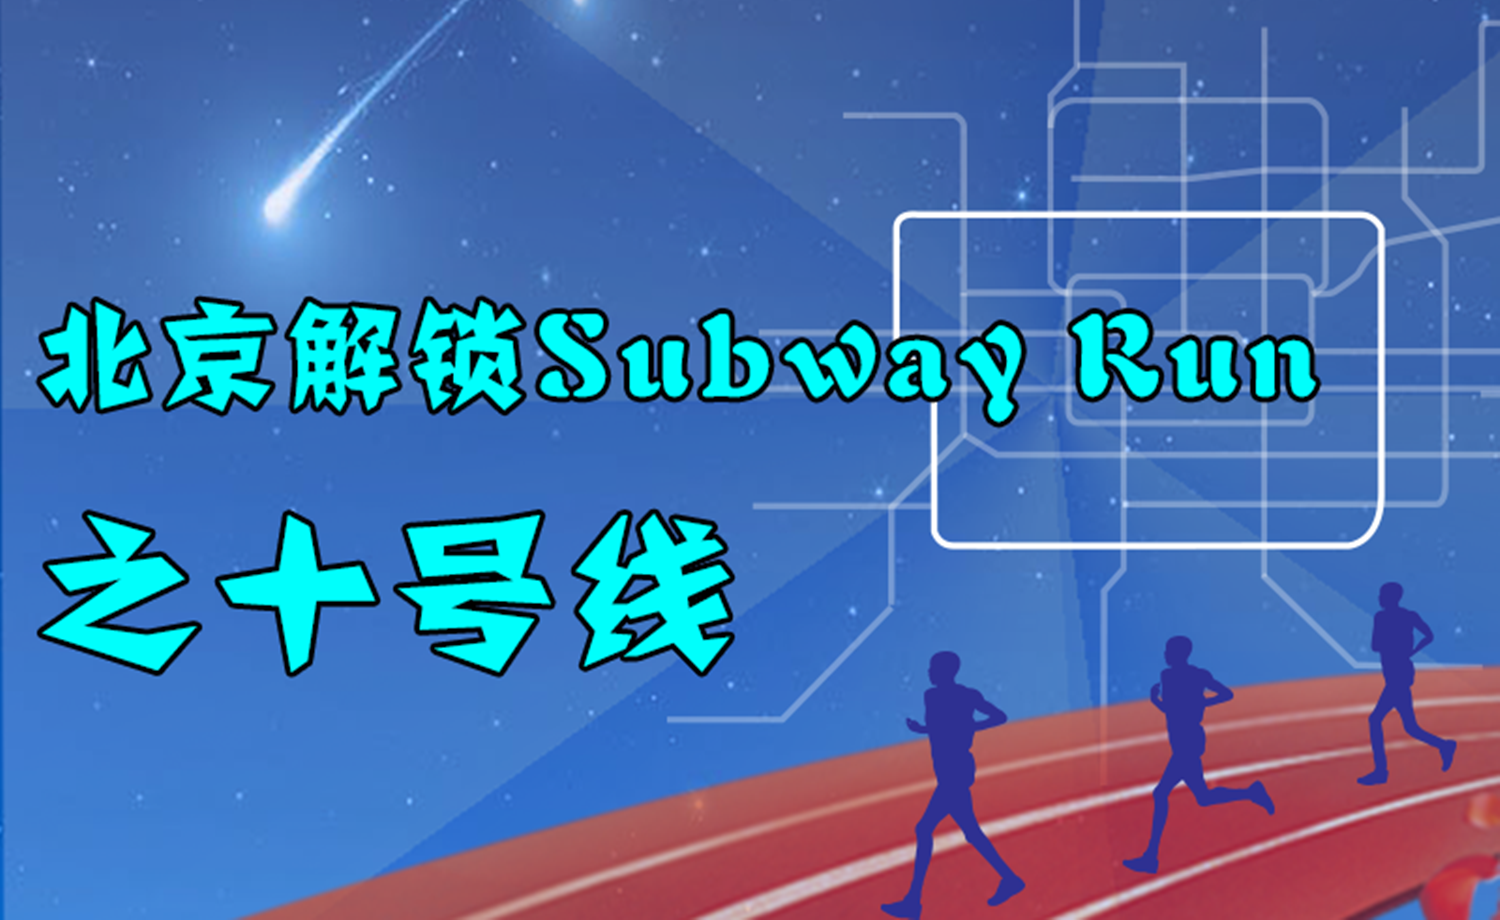 《北京解锁Subway Run》之十号线